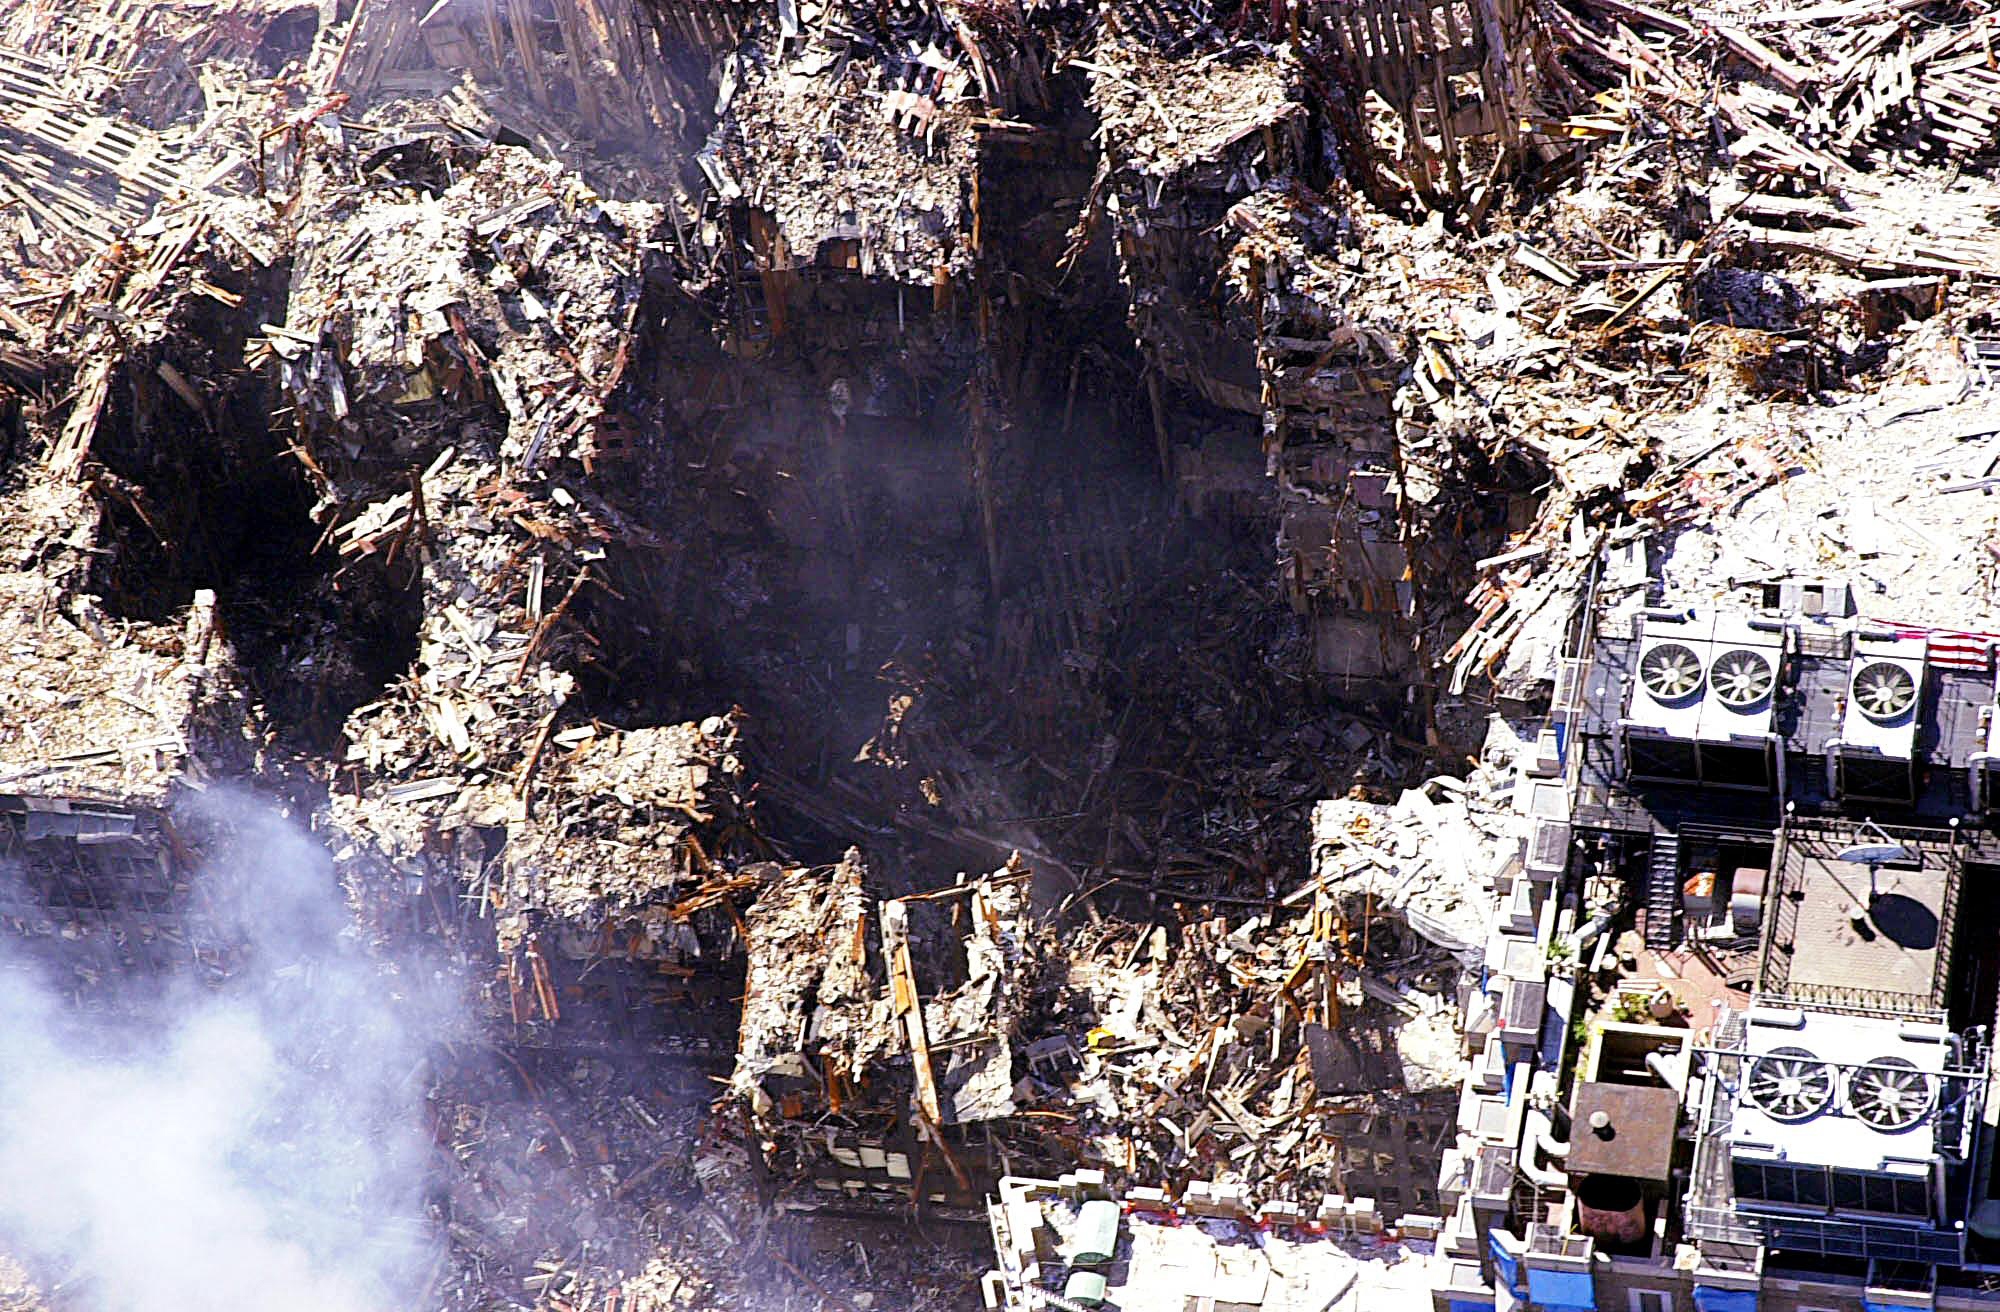 Мир после падения 117. Башни-Близнецы 11 сентября 2001. Всемирный торговый центр башни Близнецы 11 сентября. Обломки ВТЦ 11 сентября. WTC ground Zero 9/11.